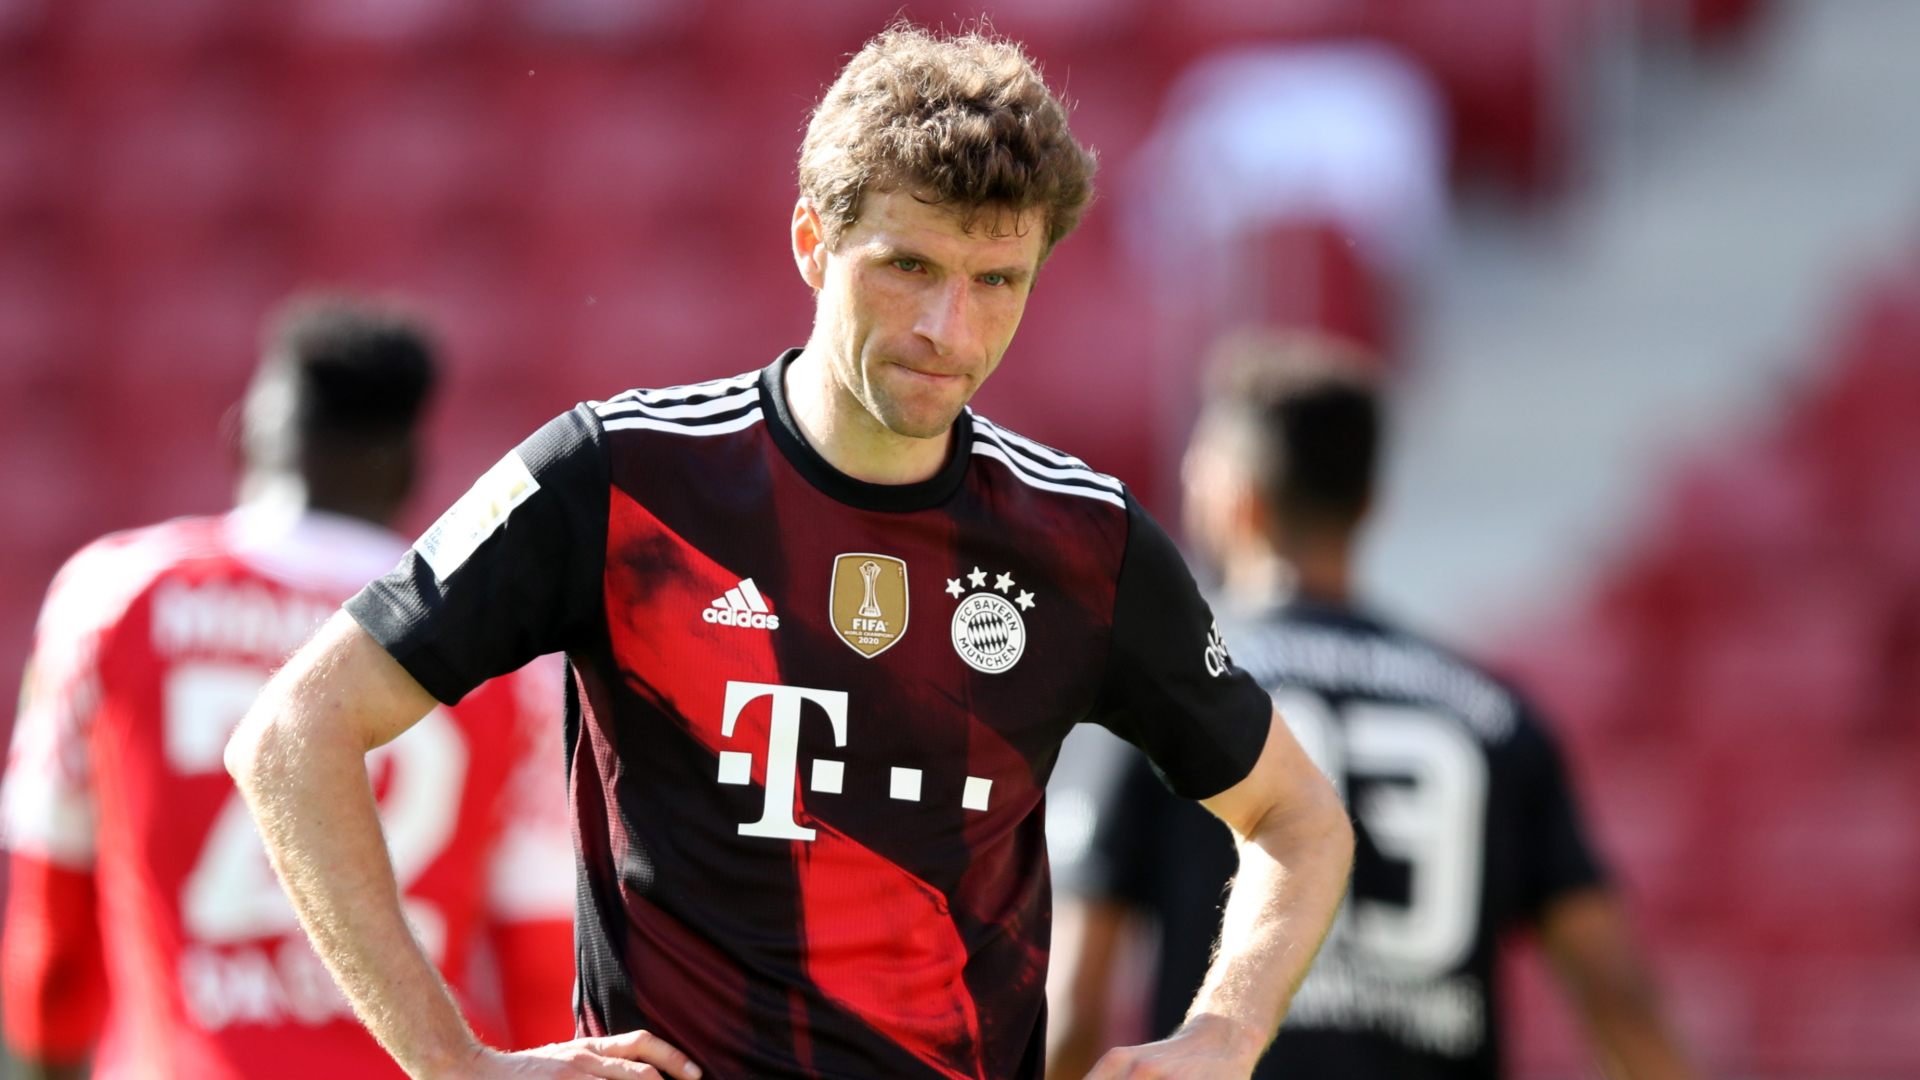 Münchens Mittelfeldspieler Thomas Müller ist enttäuscht nach der Niederlage seiner Mannschaft. | dpa